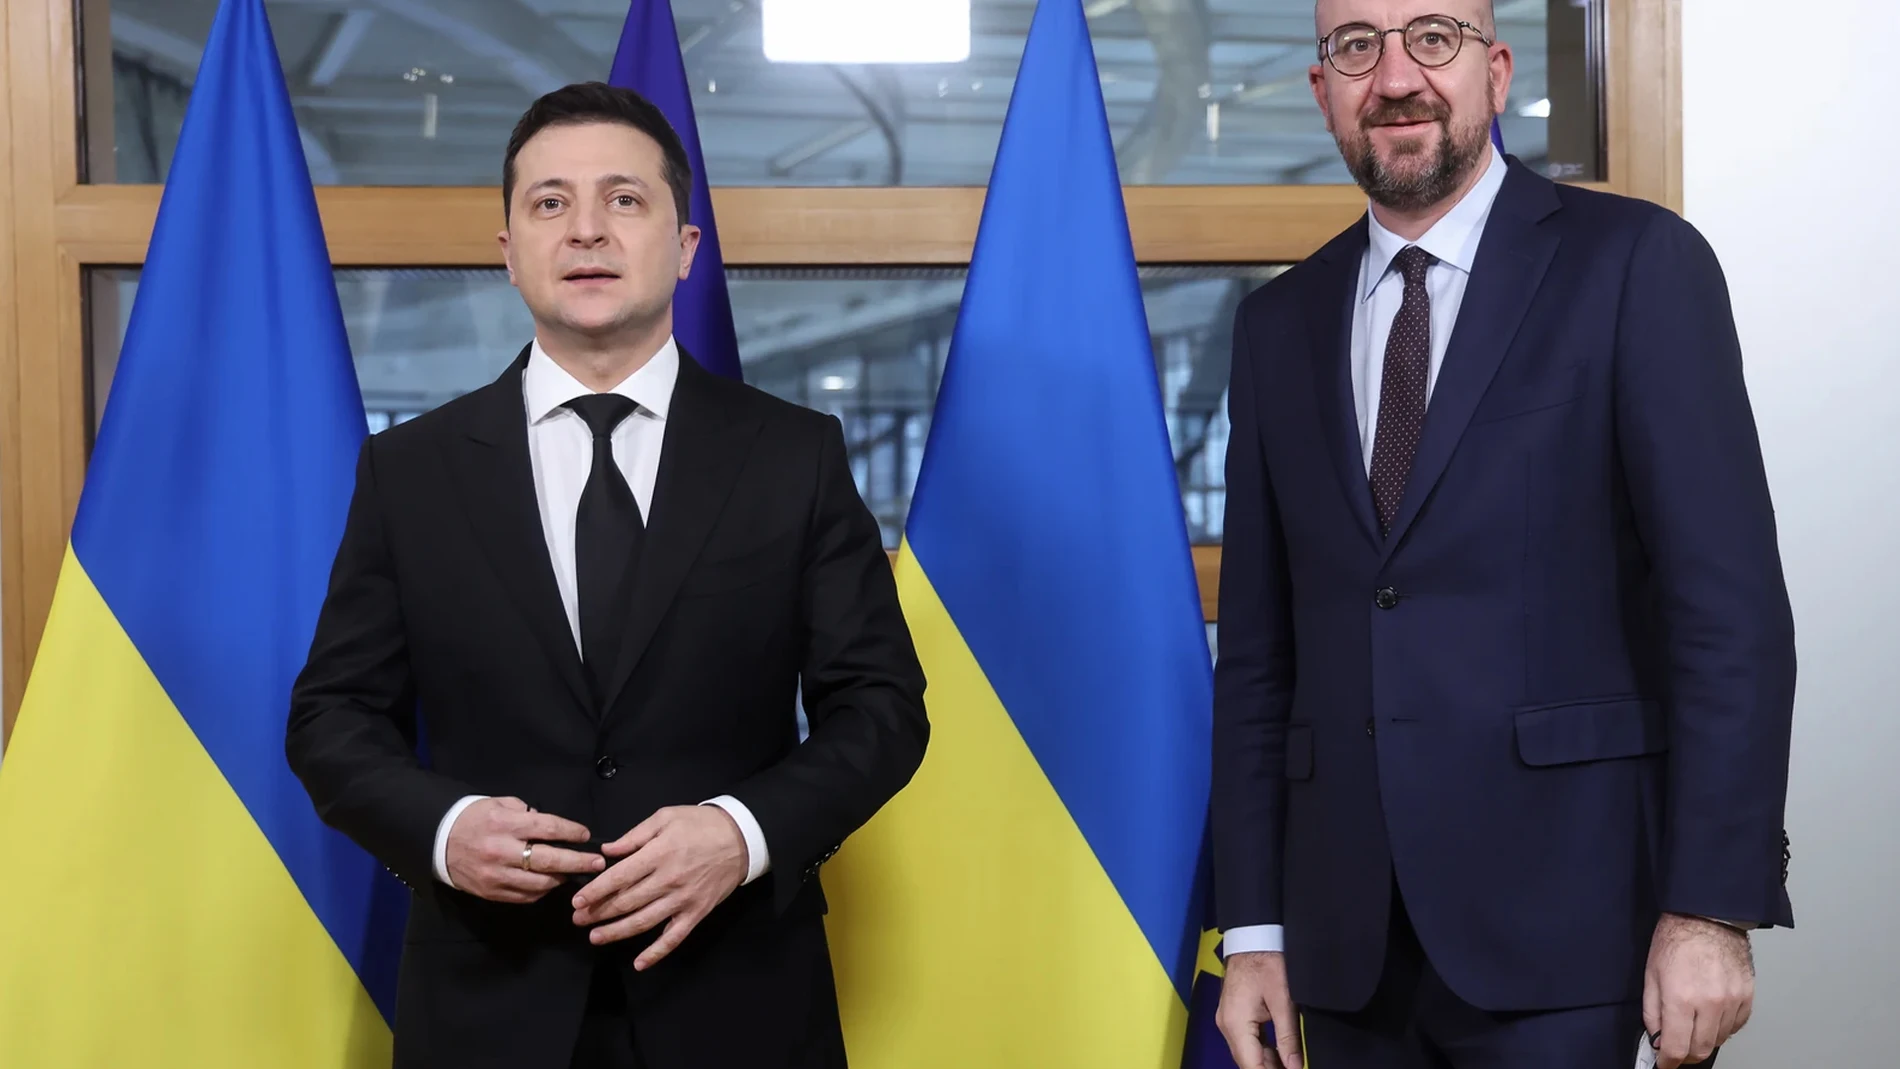 A3 Noticias Fin de Semana (26-02-22) Zelenski pide la adhesión inmediata de Ucrania en la UE